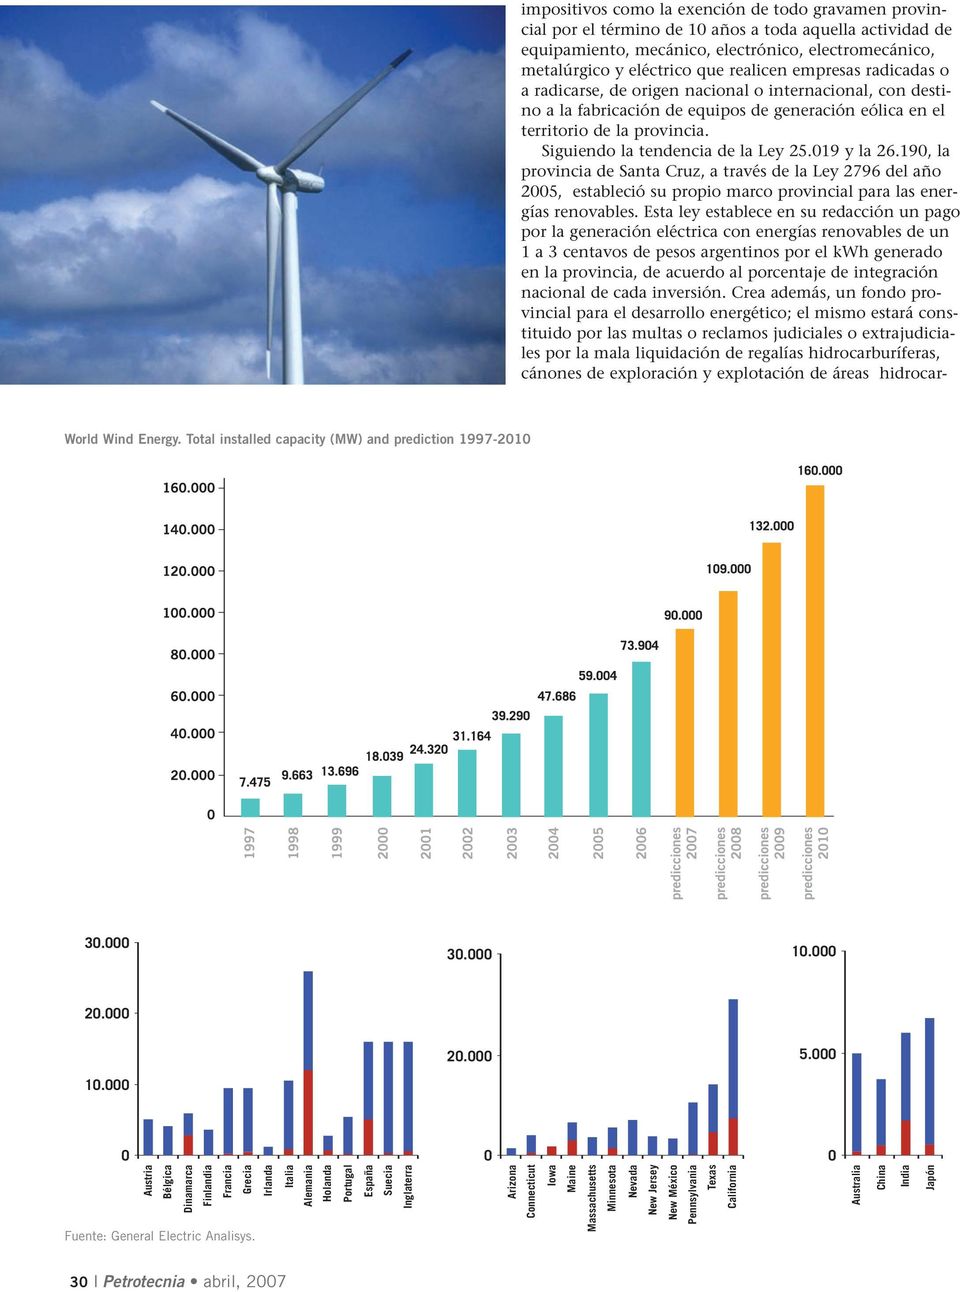 Siguiendo la tendencia de la Ley 25.019 y la 26.190, la provincia de Santa Cruz, a través de la Ley 2796 del año 2005, estableció su propio marco provincial para las energías renovables.